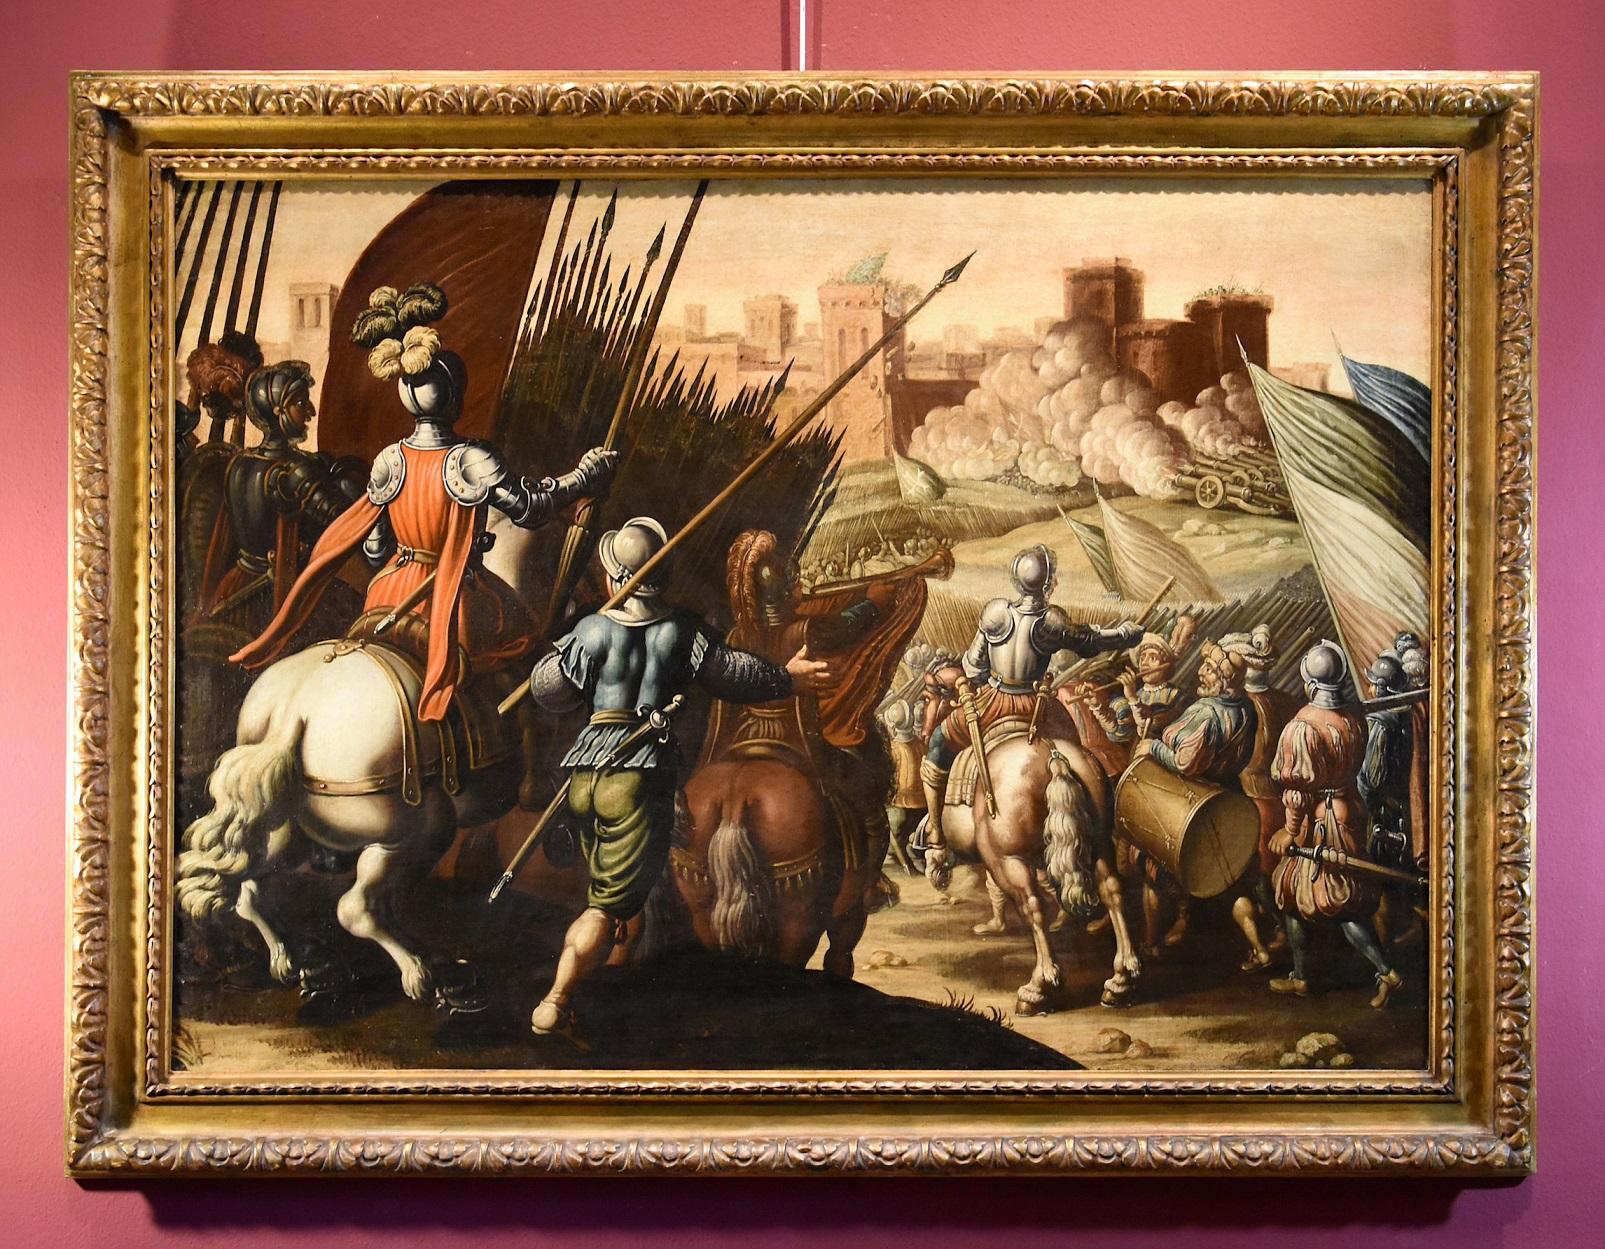 Landscape Painting Antonio Tempesta (Florence 1555 - Rome 1630) - Peinture à l'huile sur toile de la bataille de Tempesta - Paysage ancien du 16/17e siècle - Italie